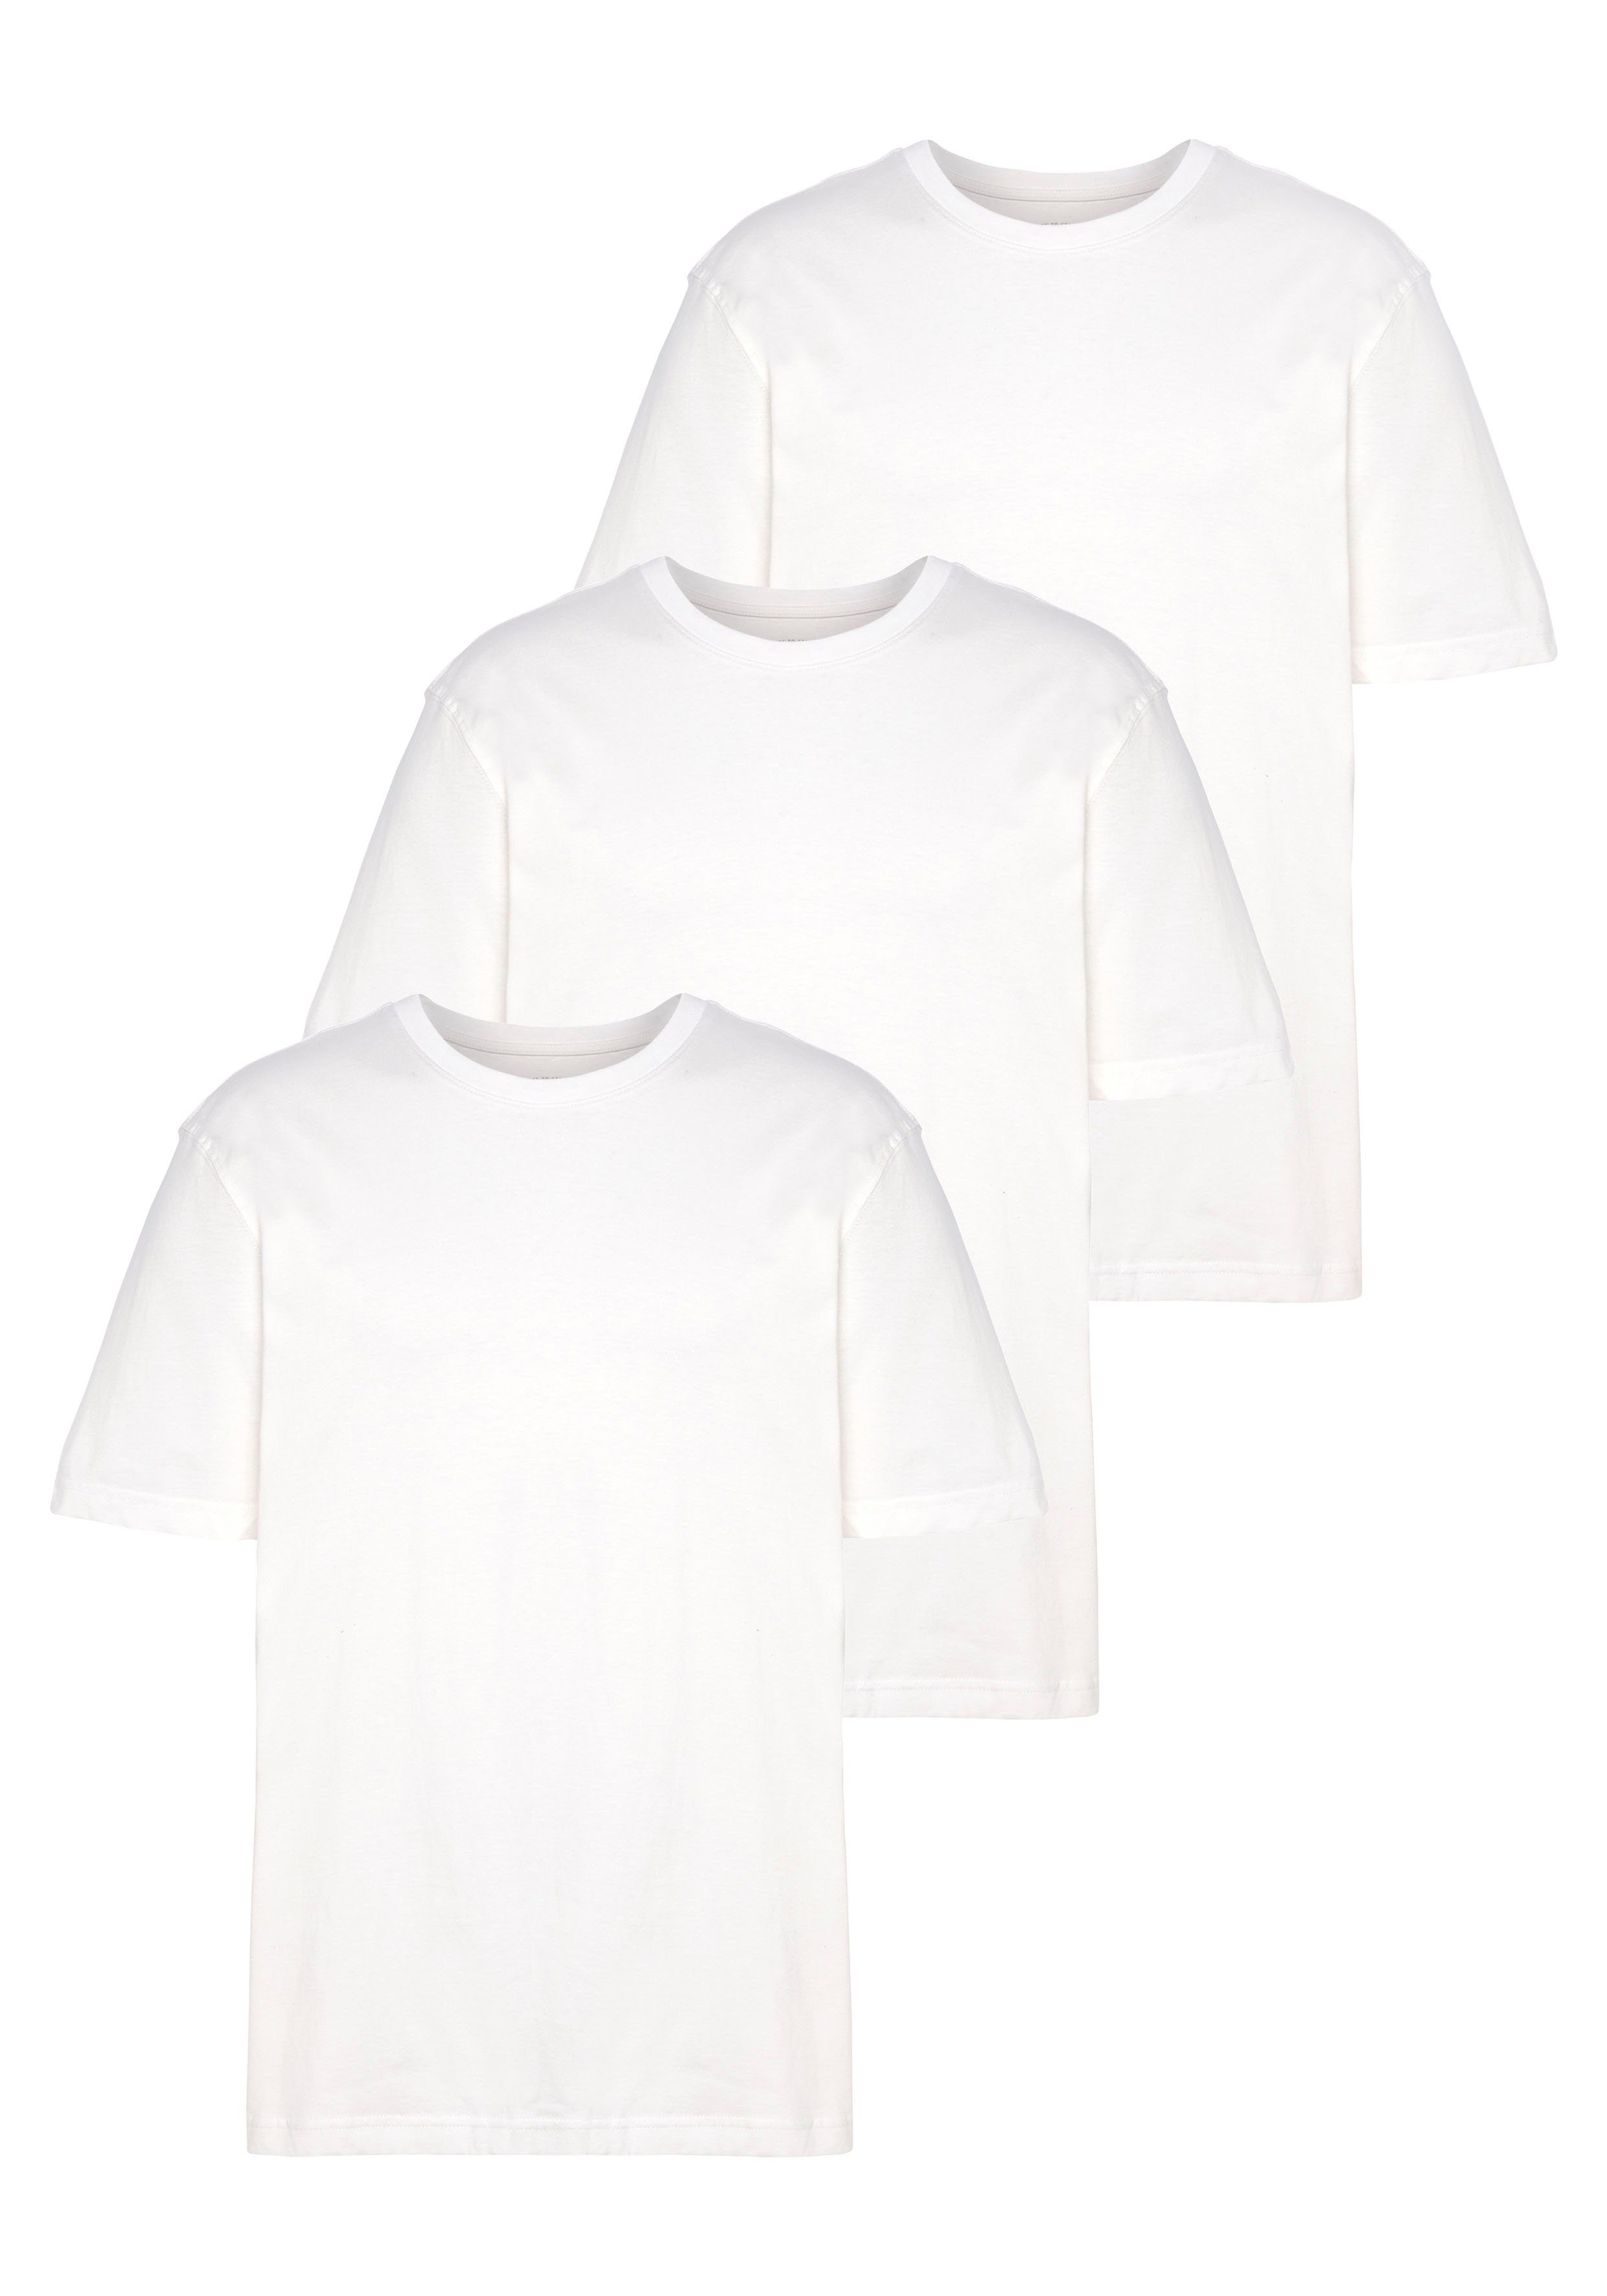 Man's World T-Shirt (Packung, 3-tlg., als perfekt 3er-Pack) Unterzieh- T-shirt weiß